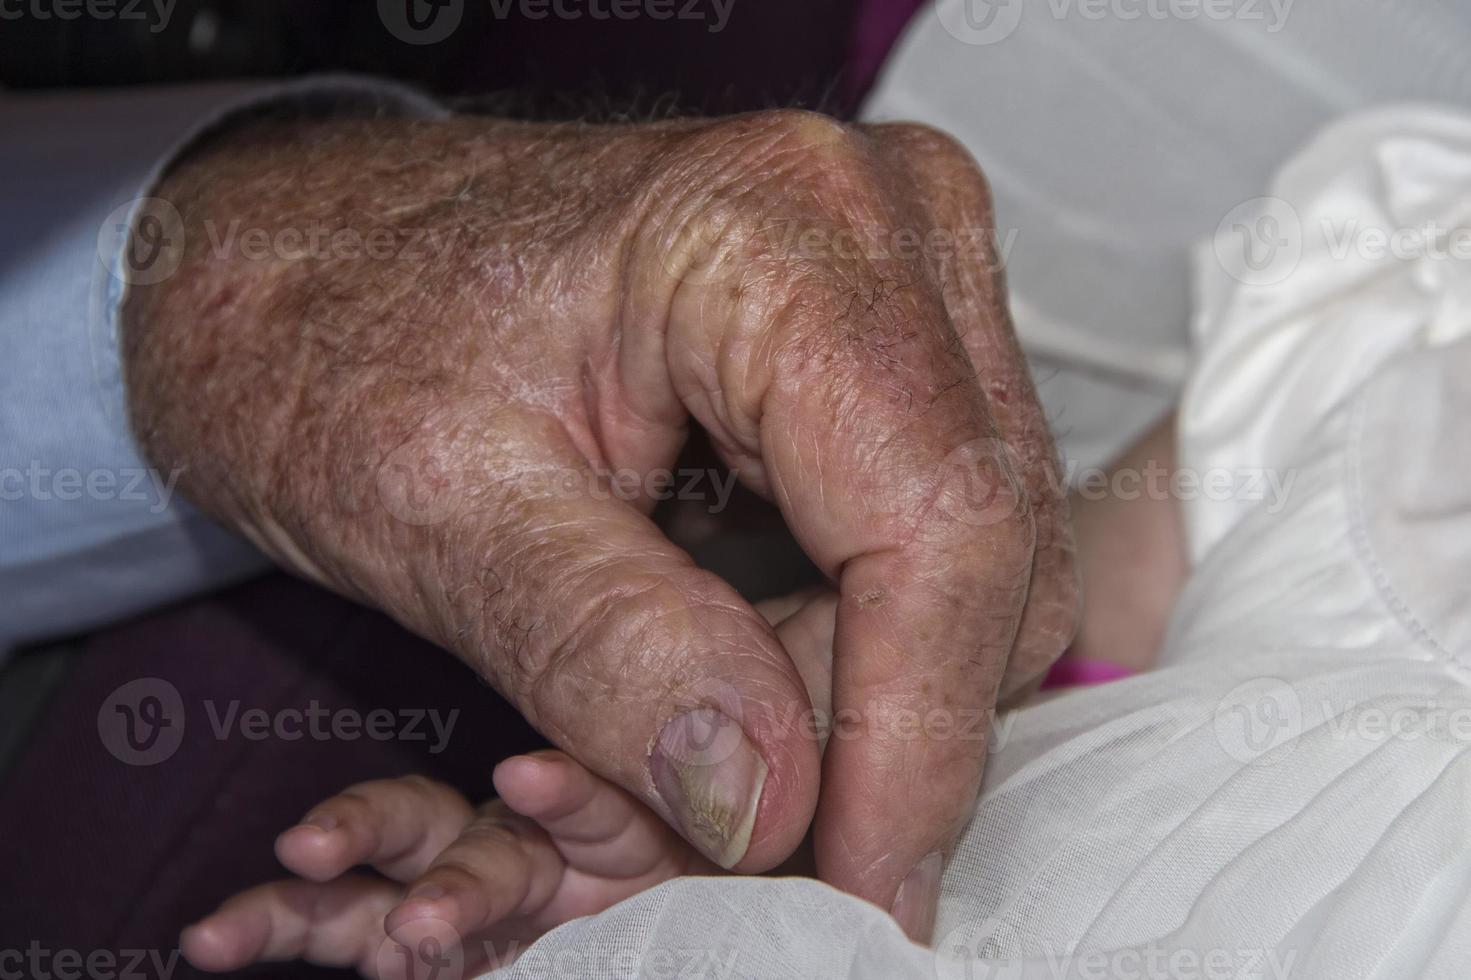 alte pensionierte mannhände, die neugeborenes eins halten foto